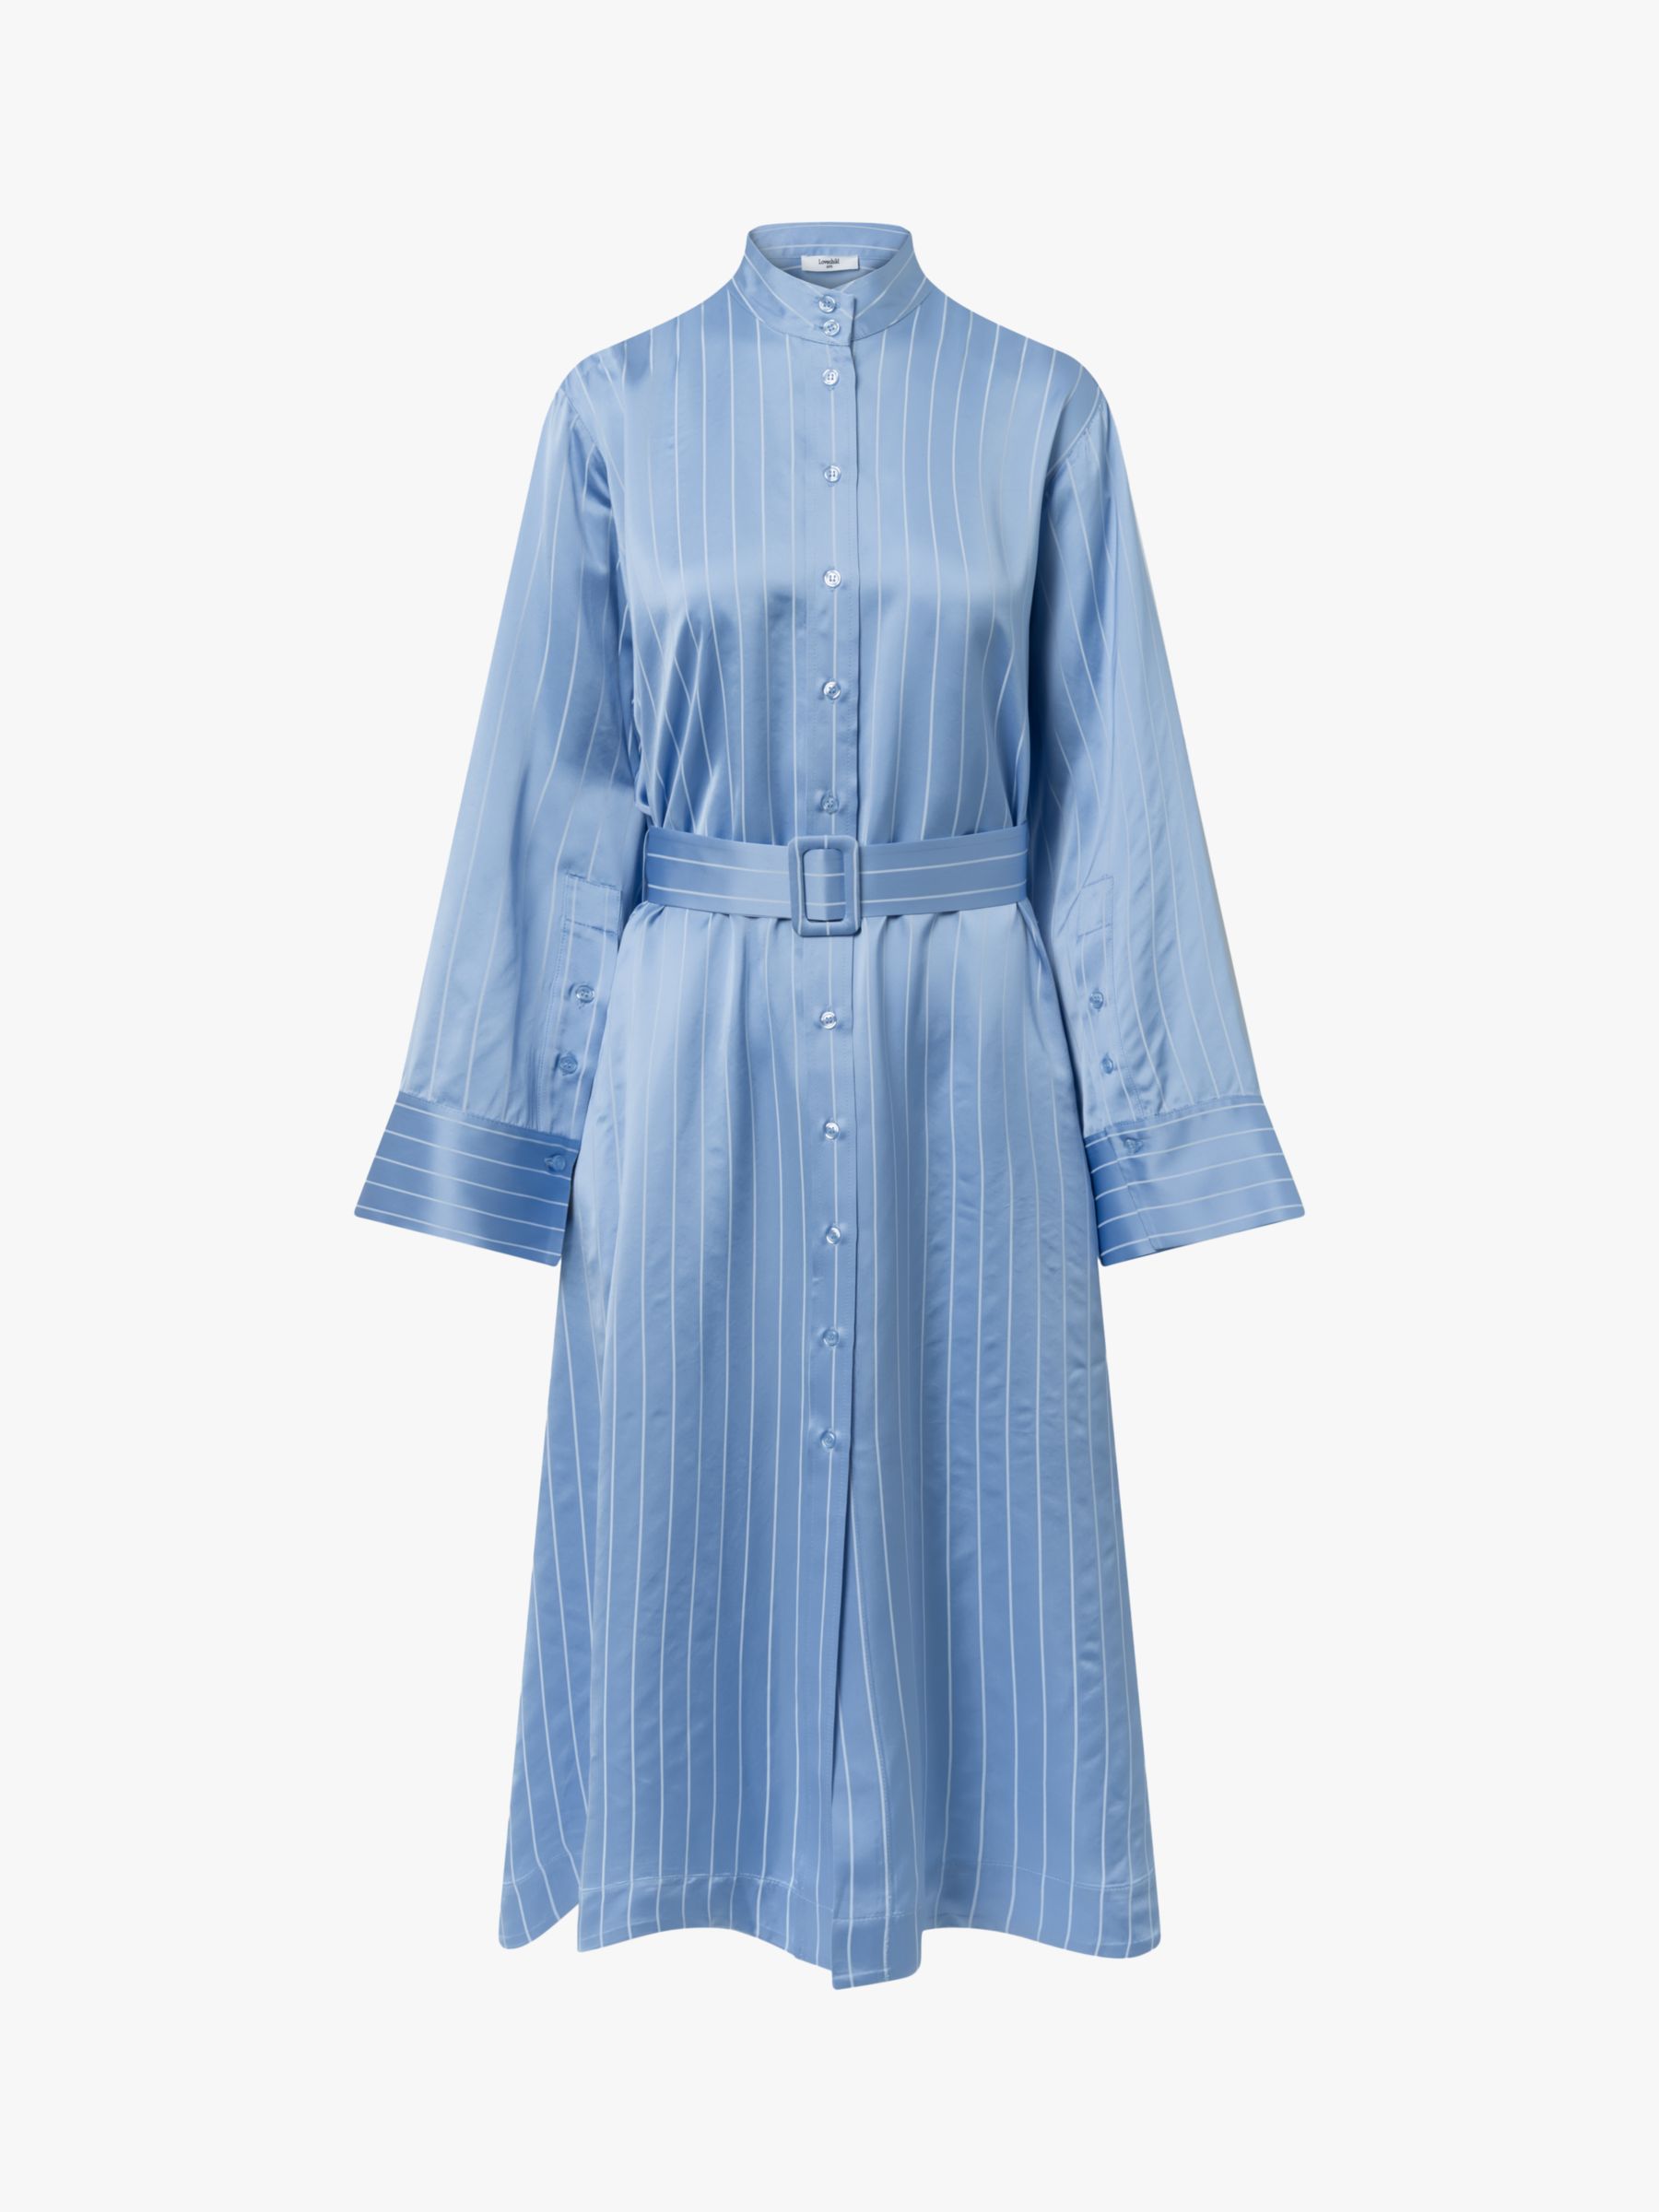 Lovechild 1979 Yua Dress, Powder Blue, 12